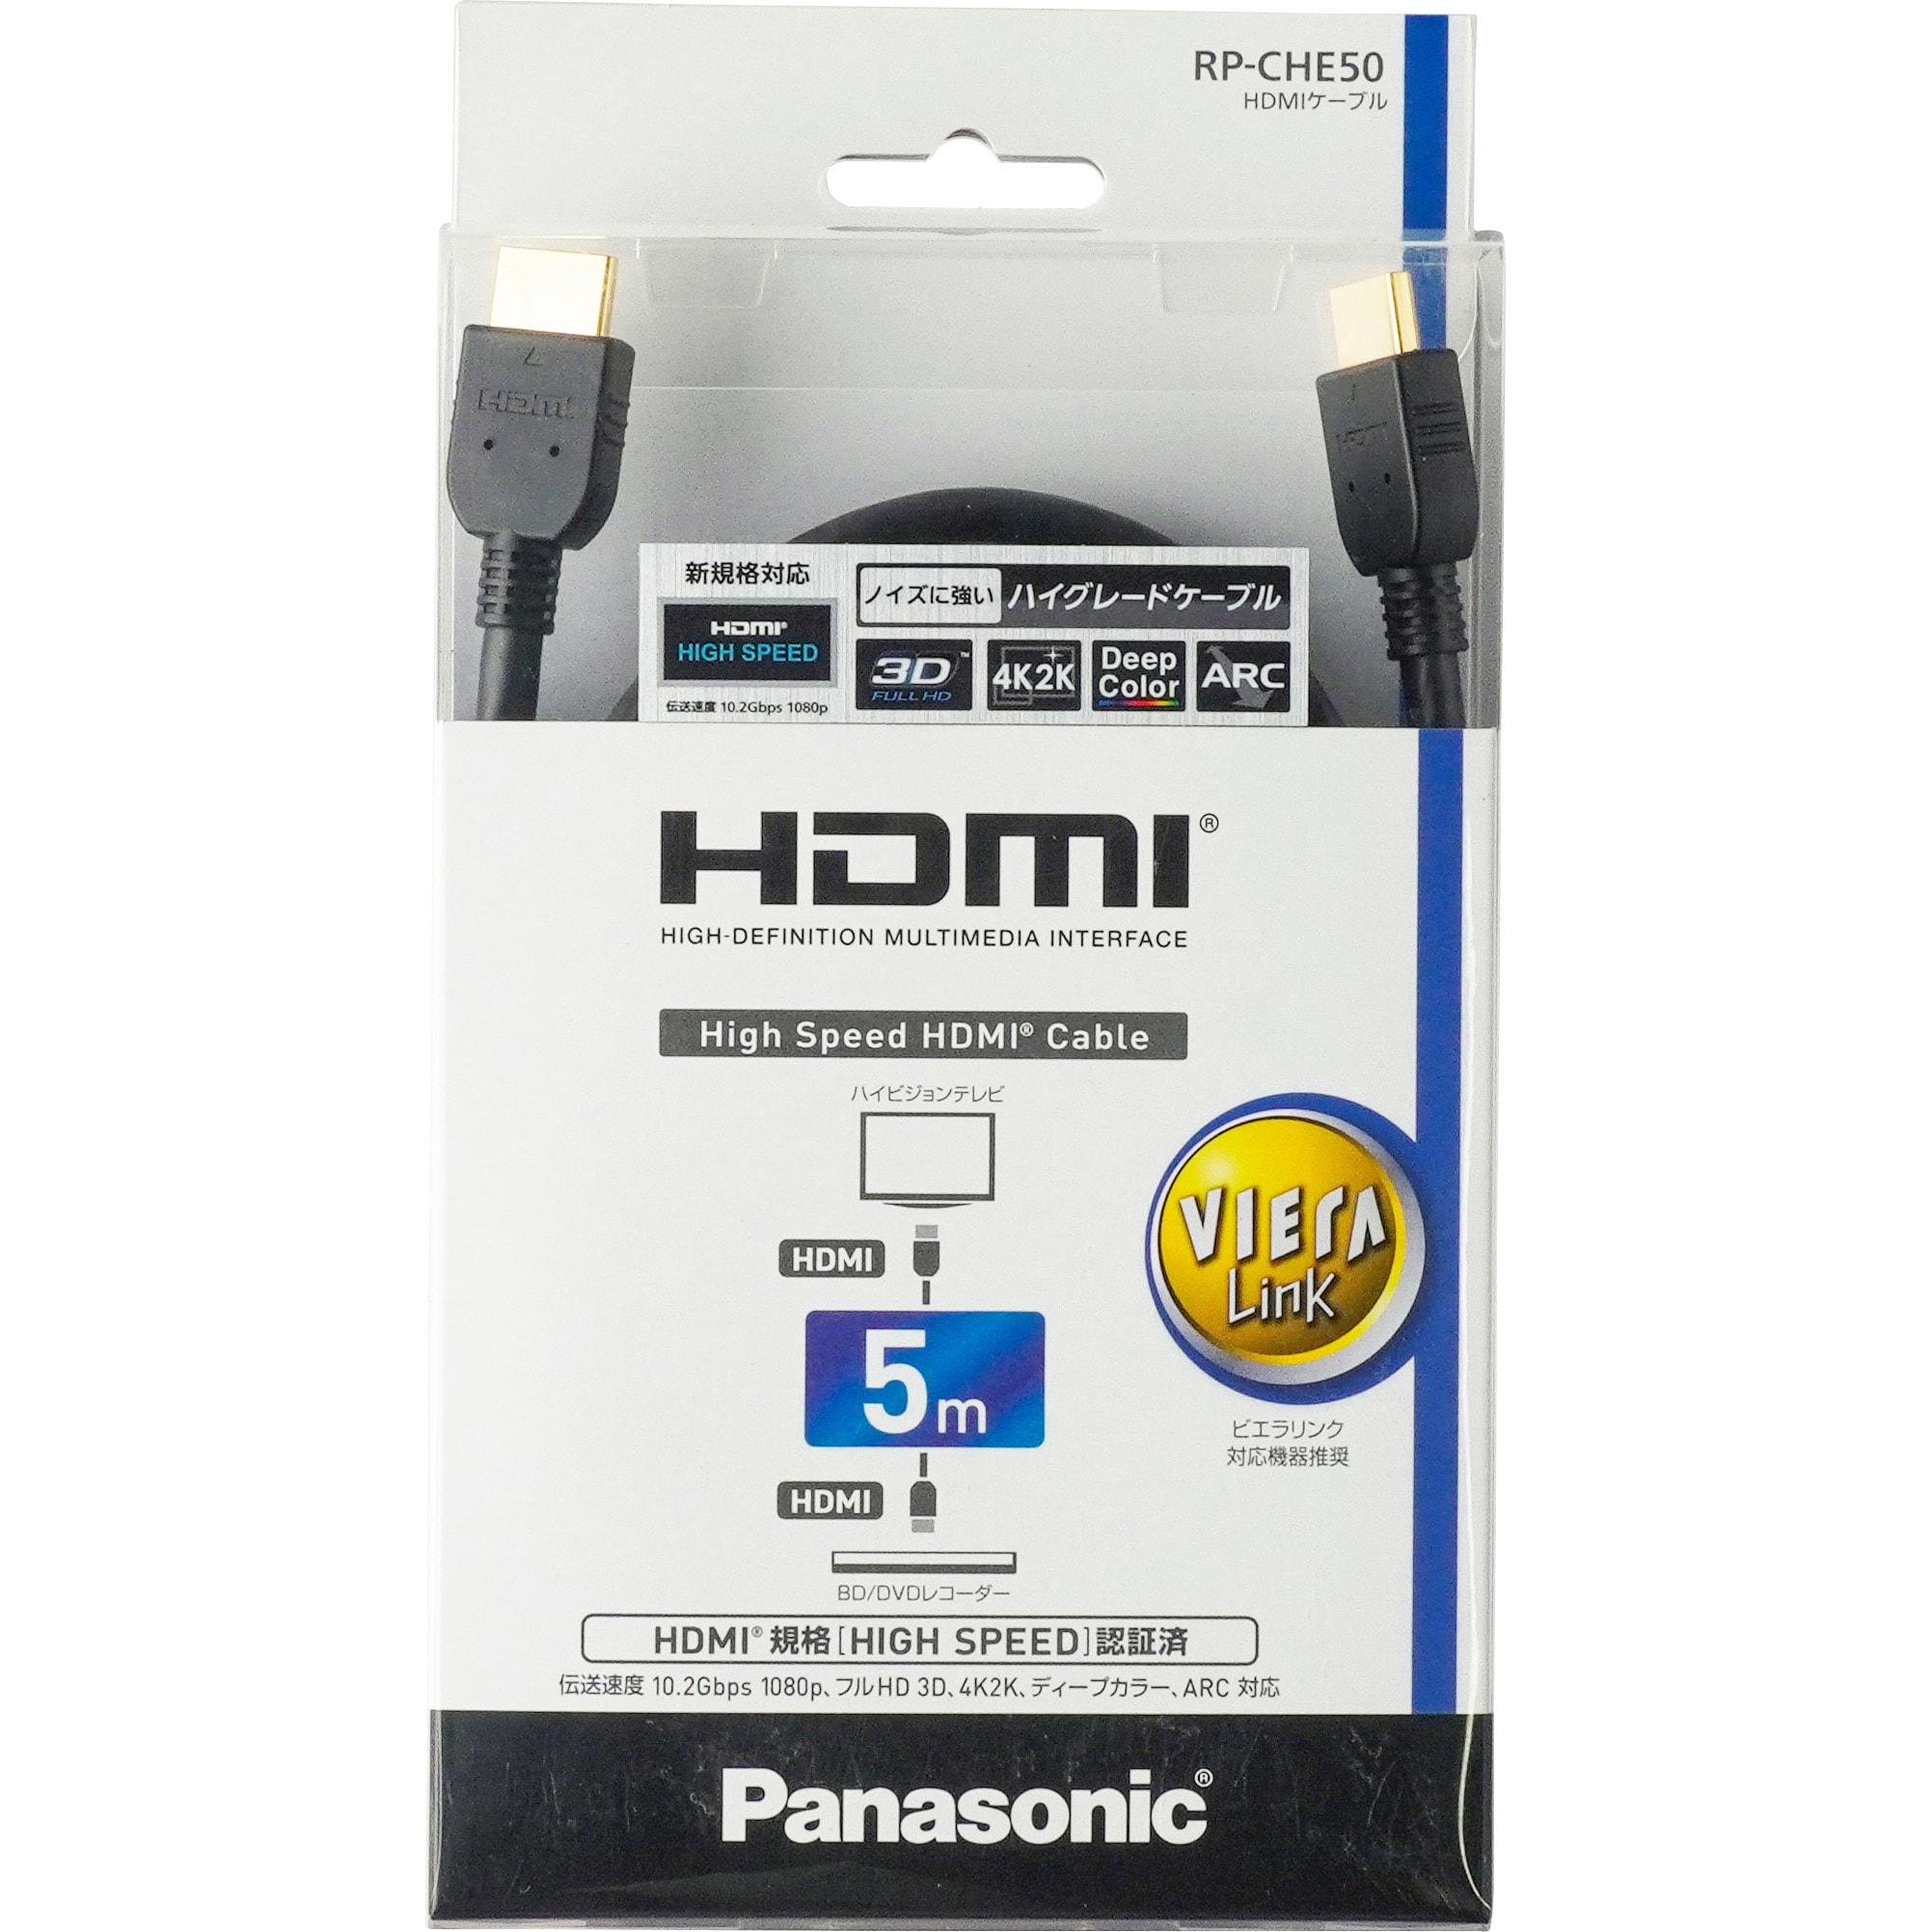 RP-CHE50-K HDMIプラグ(タイプA)⇔HDMIプラグ(タイプA) HDMIケーブル